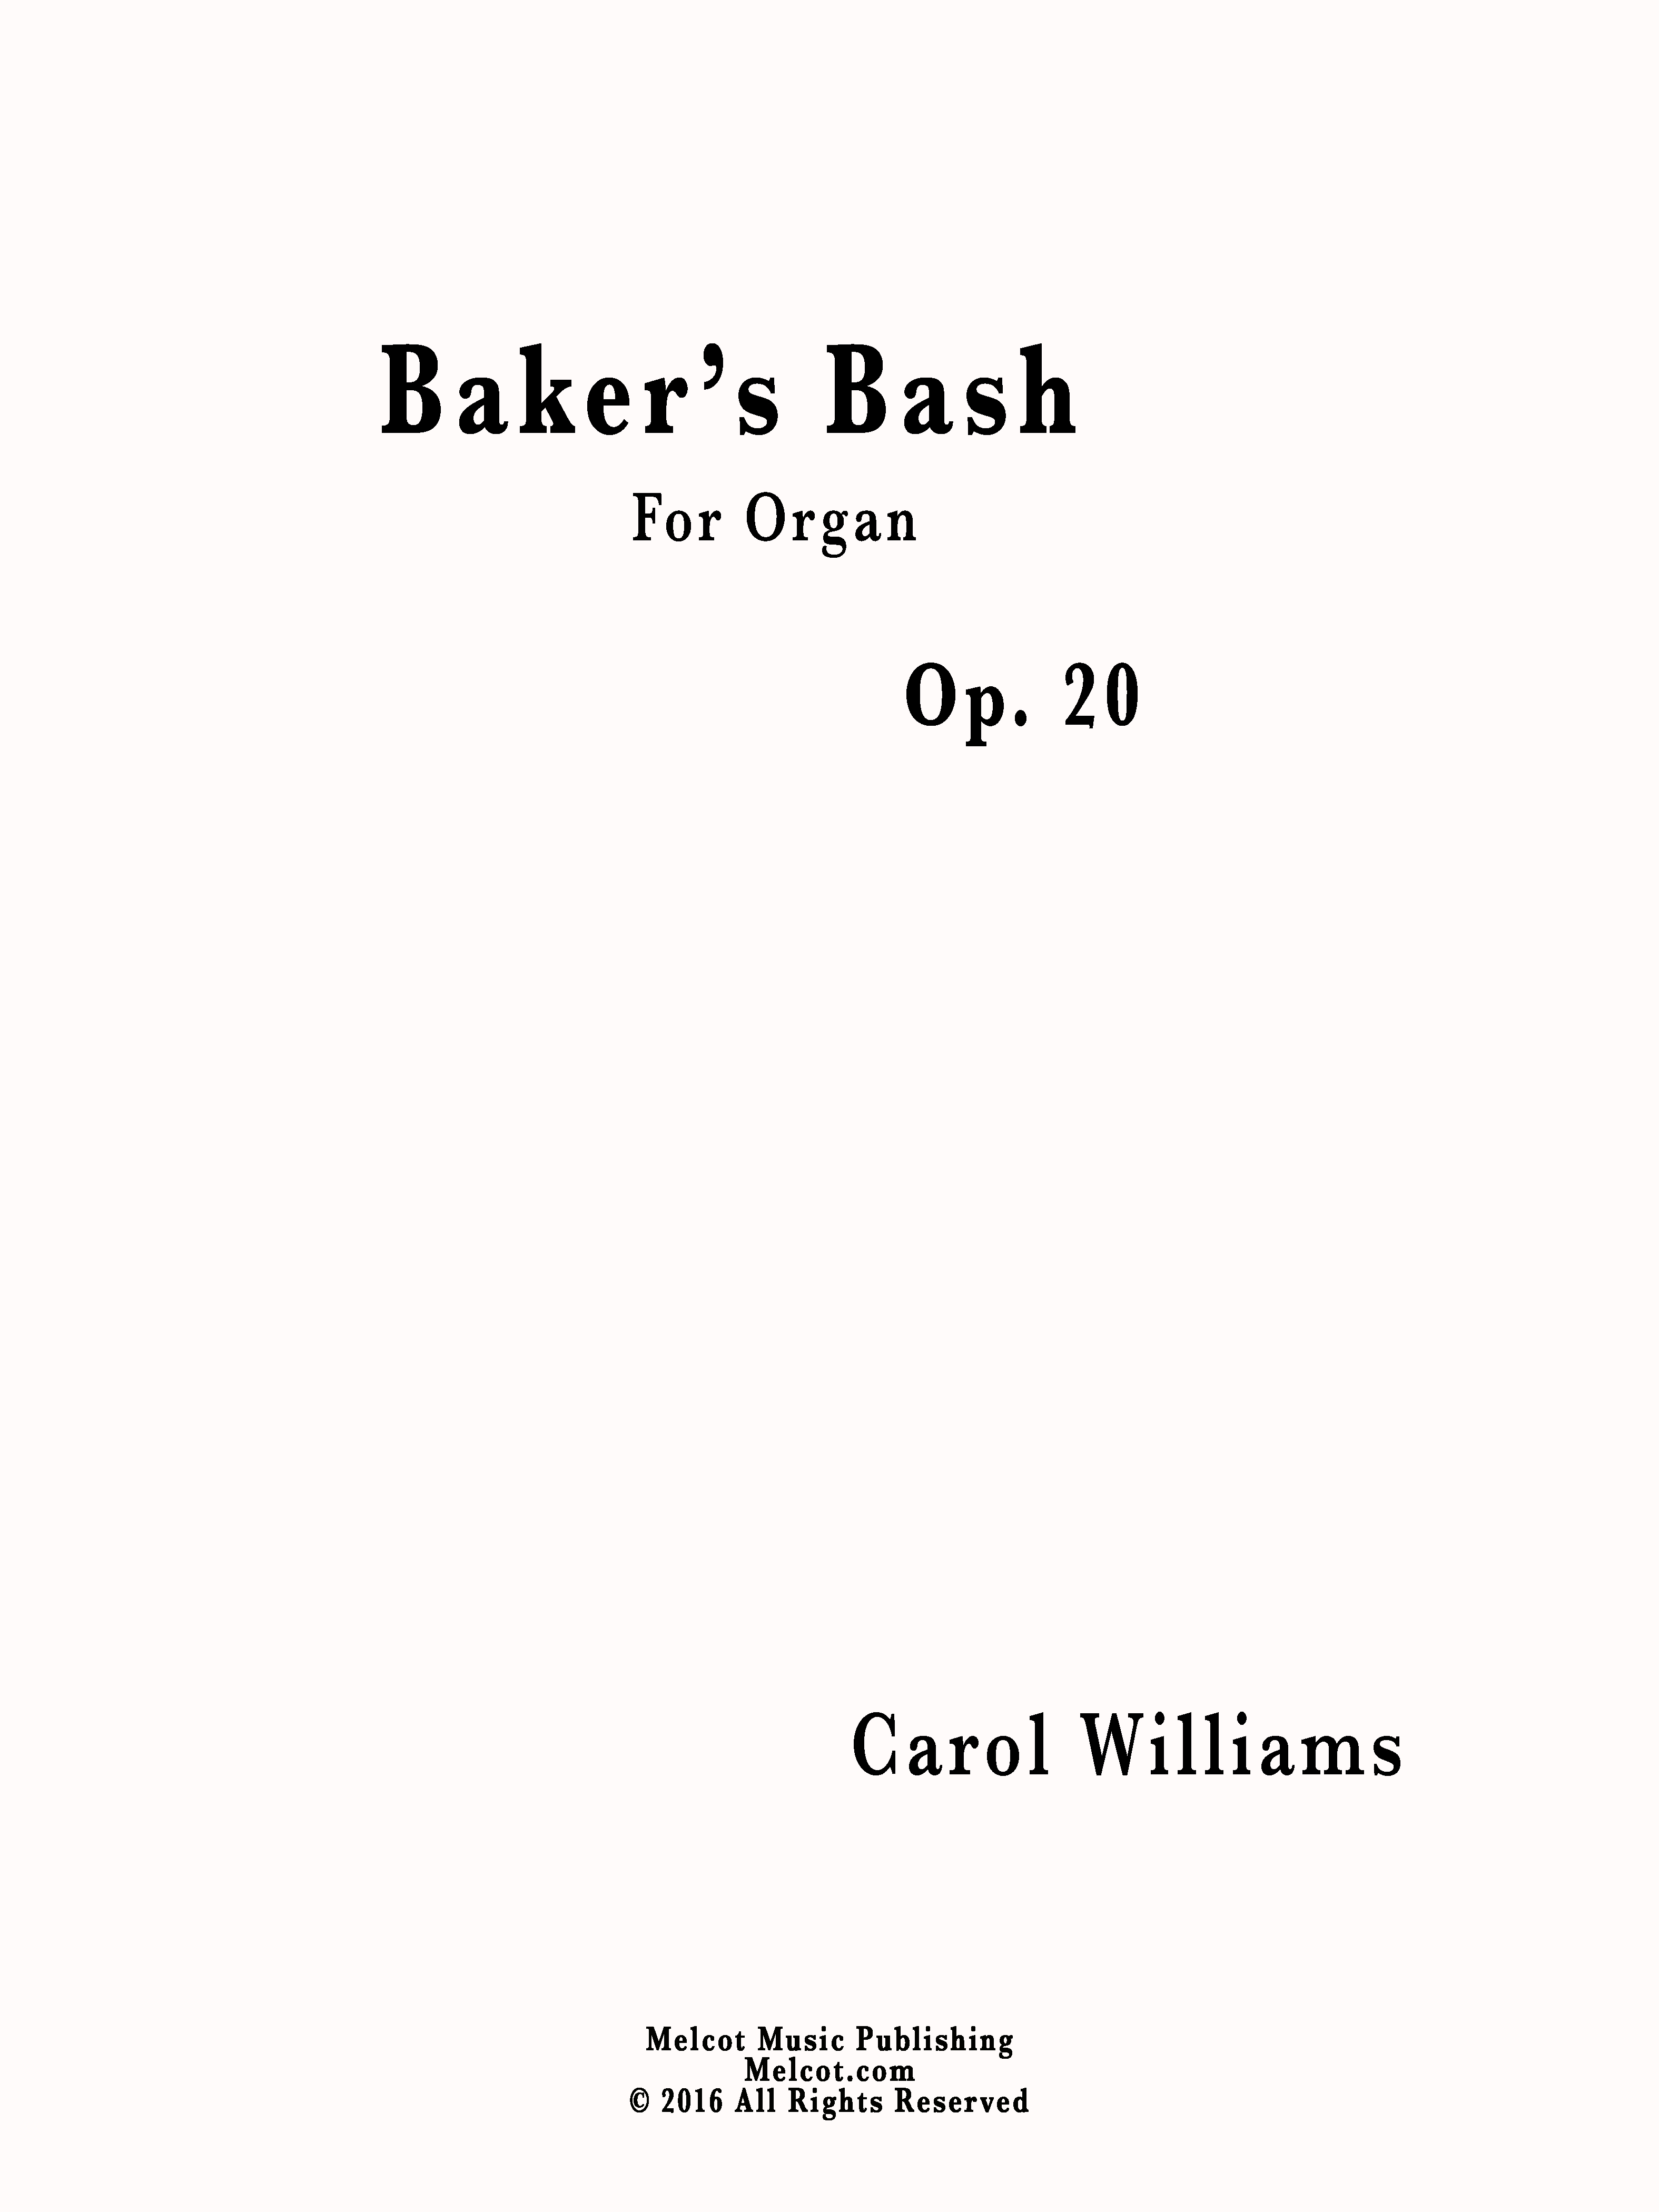 Baker's bash